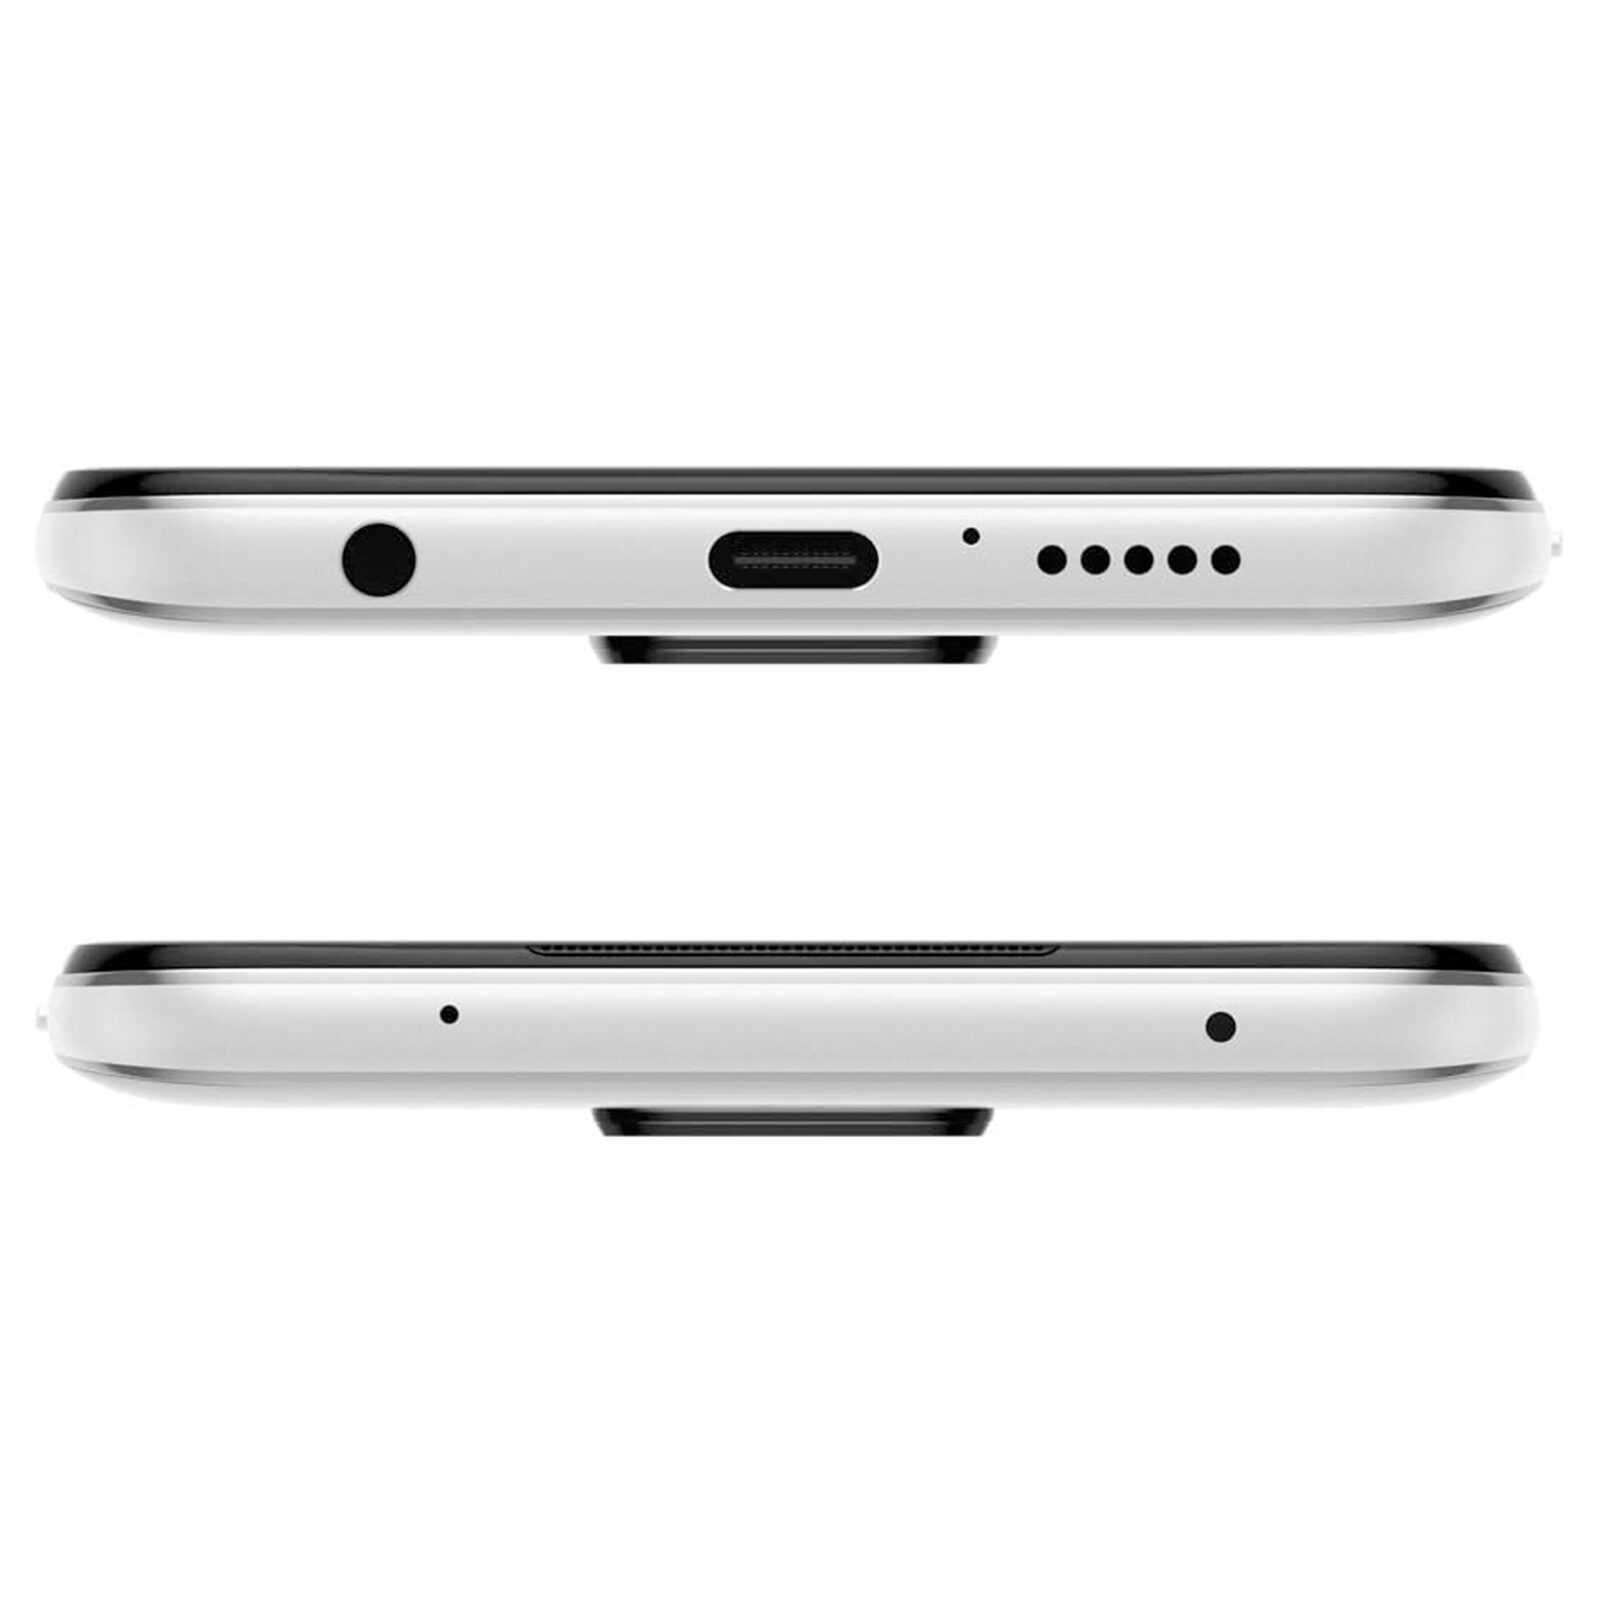 گوشی موبایل سامسونگ مدل Galaxy A11 SM-A115F/DS دو سیم کارت ظرفیت 32 گیگابایت با 2 گیگابایت رم